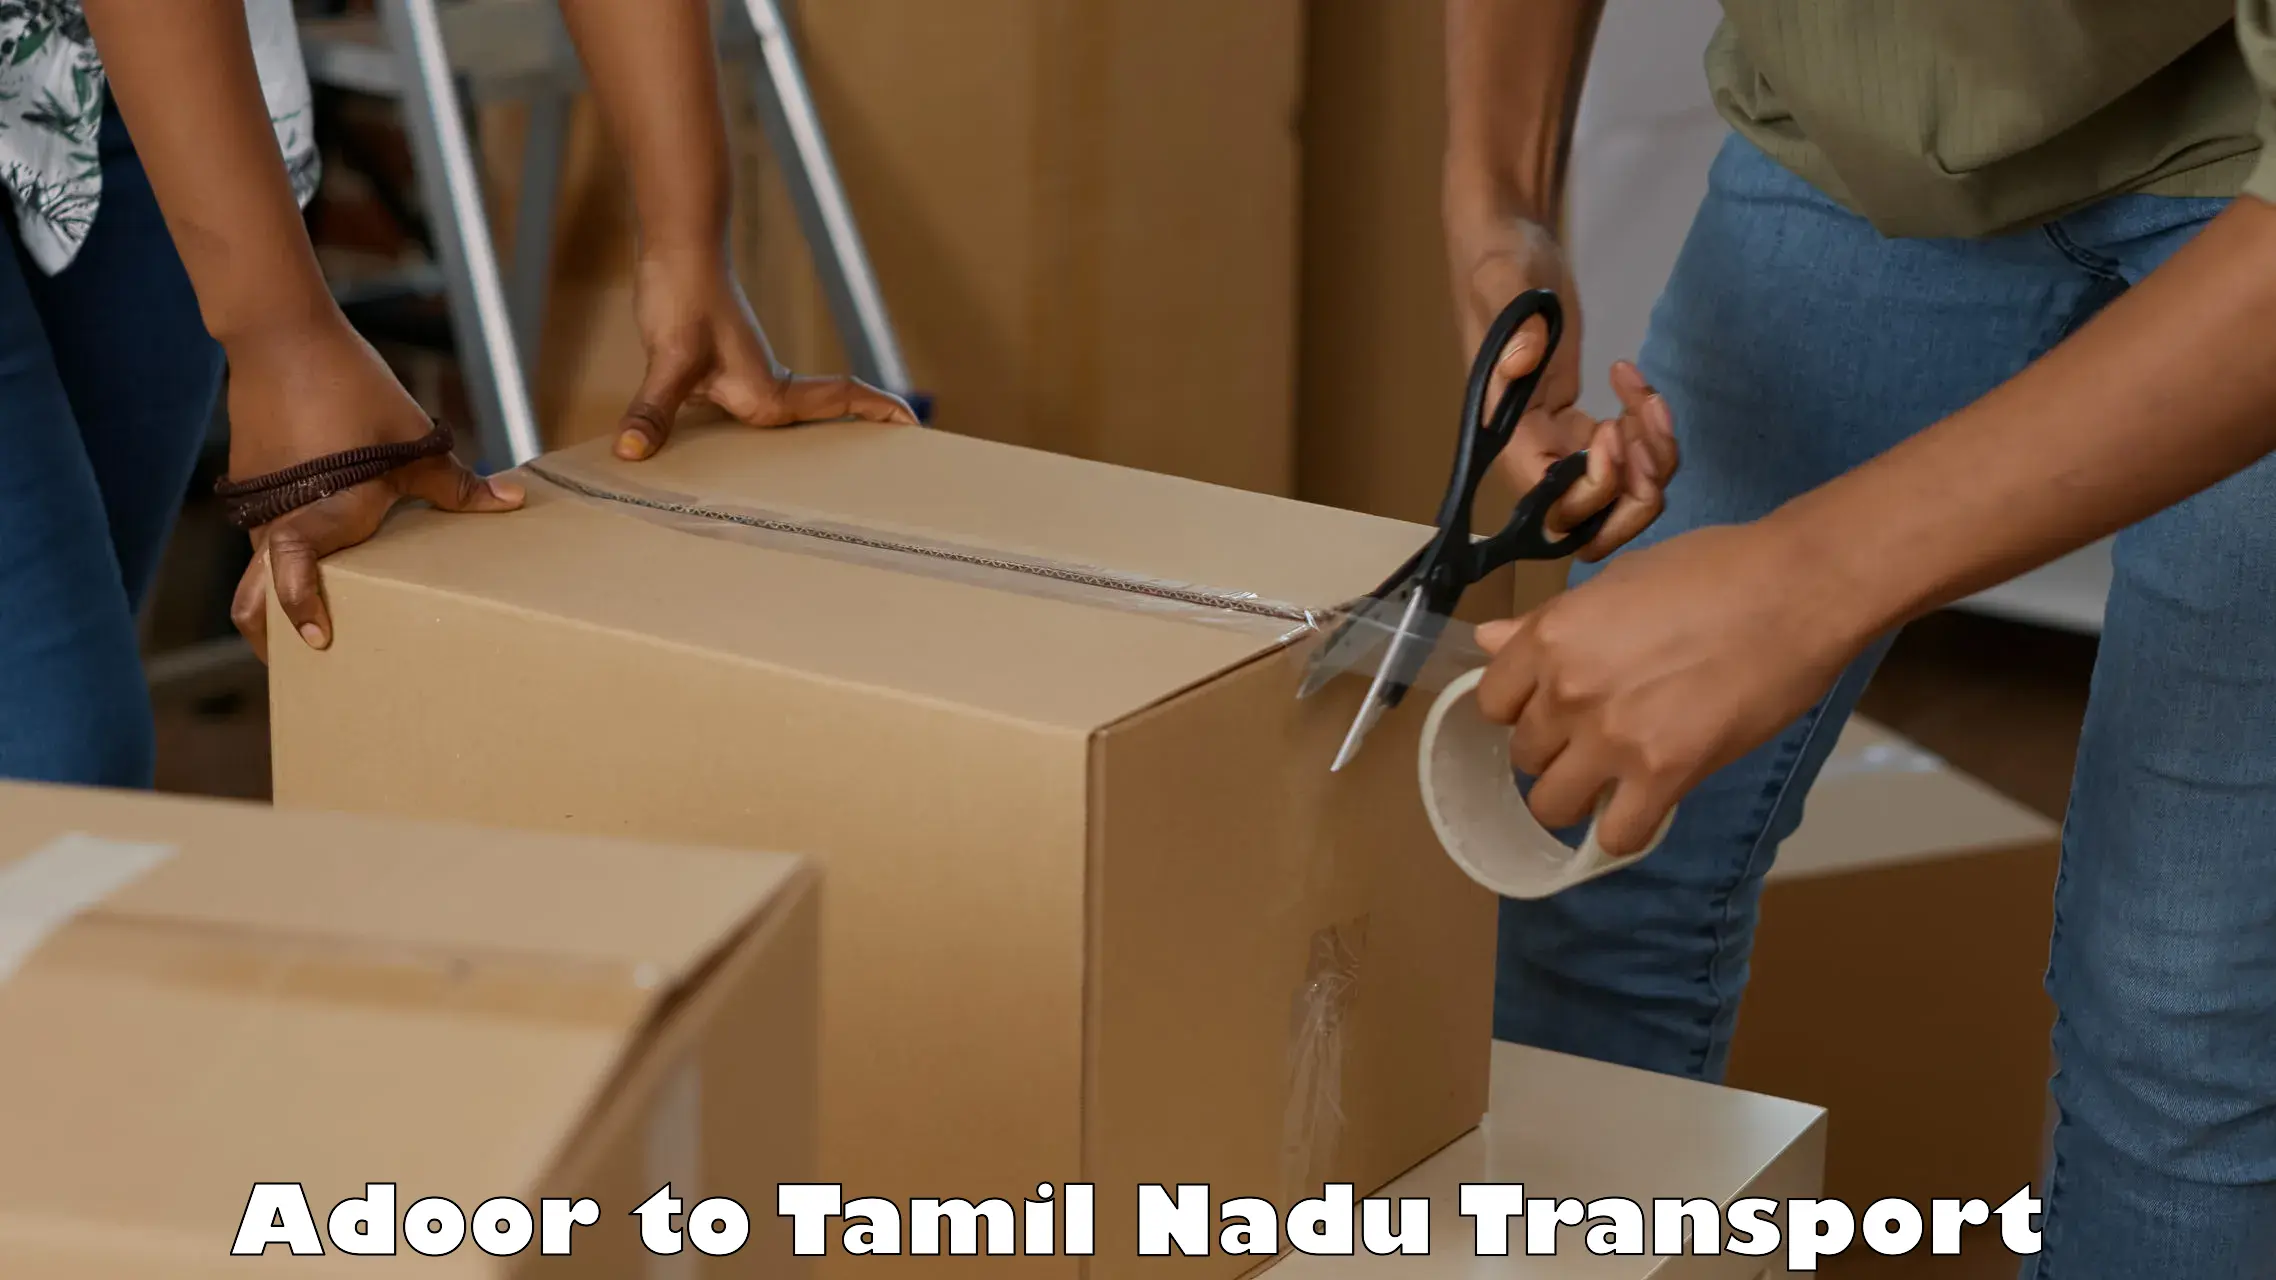 Transport in sharing in Adoor to Tiruturaipundi